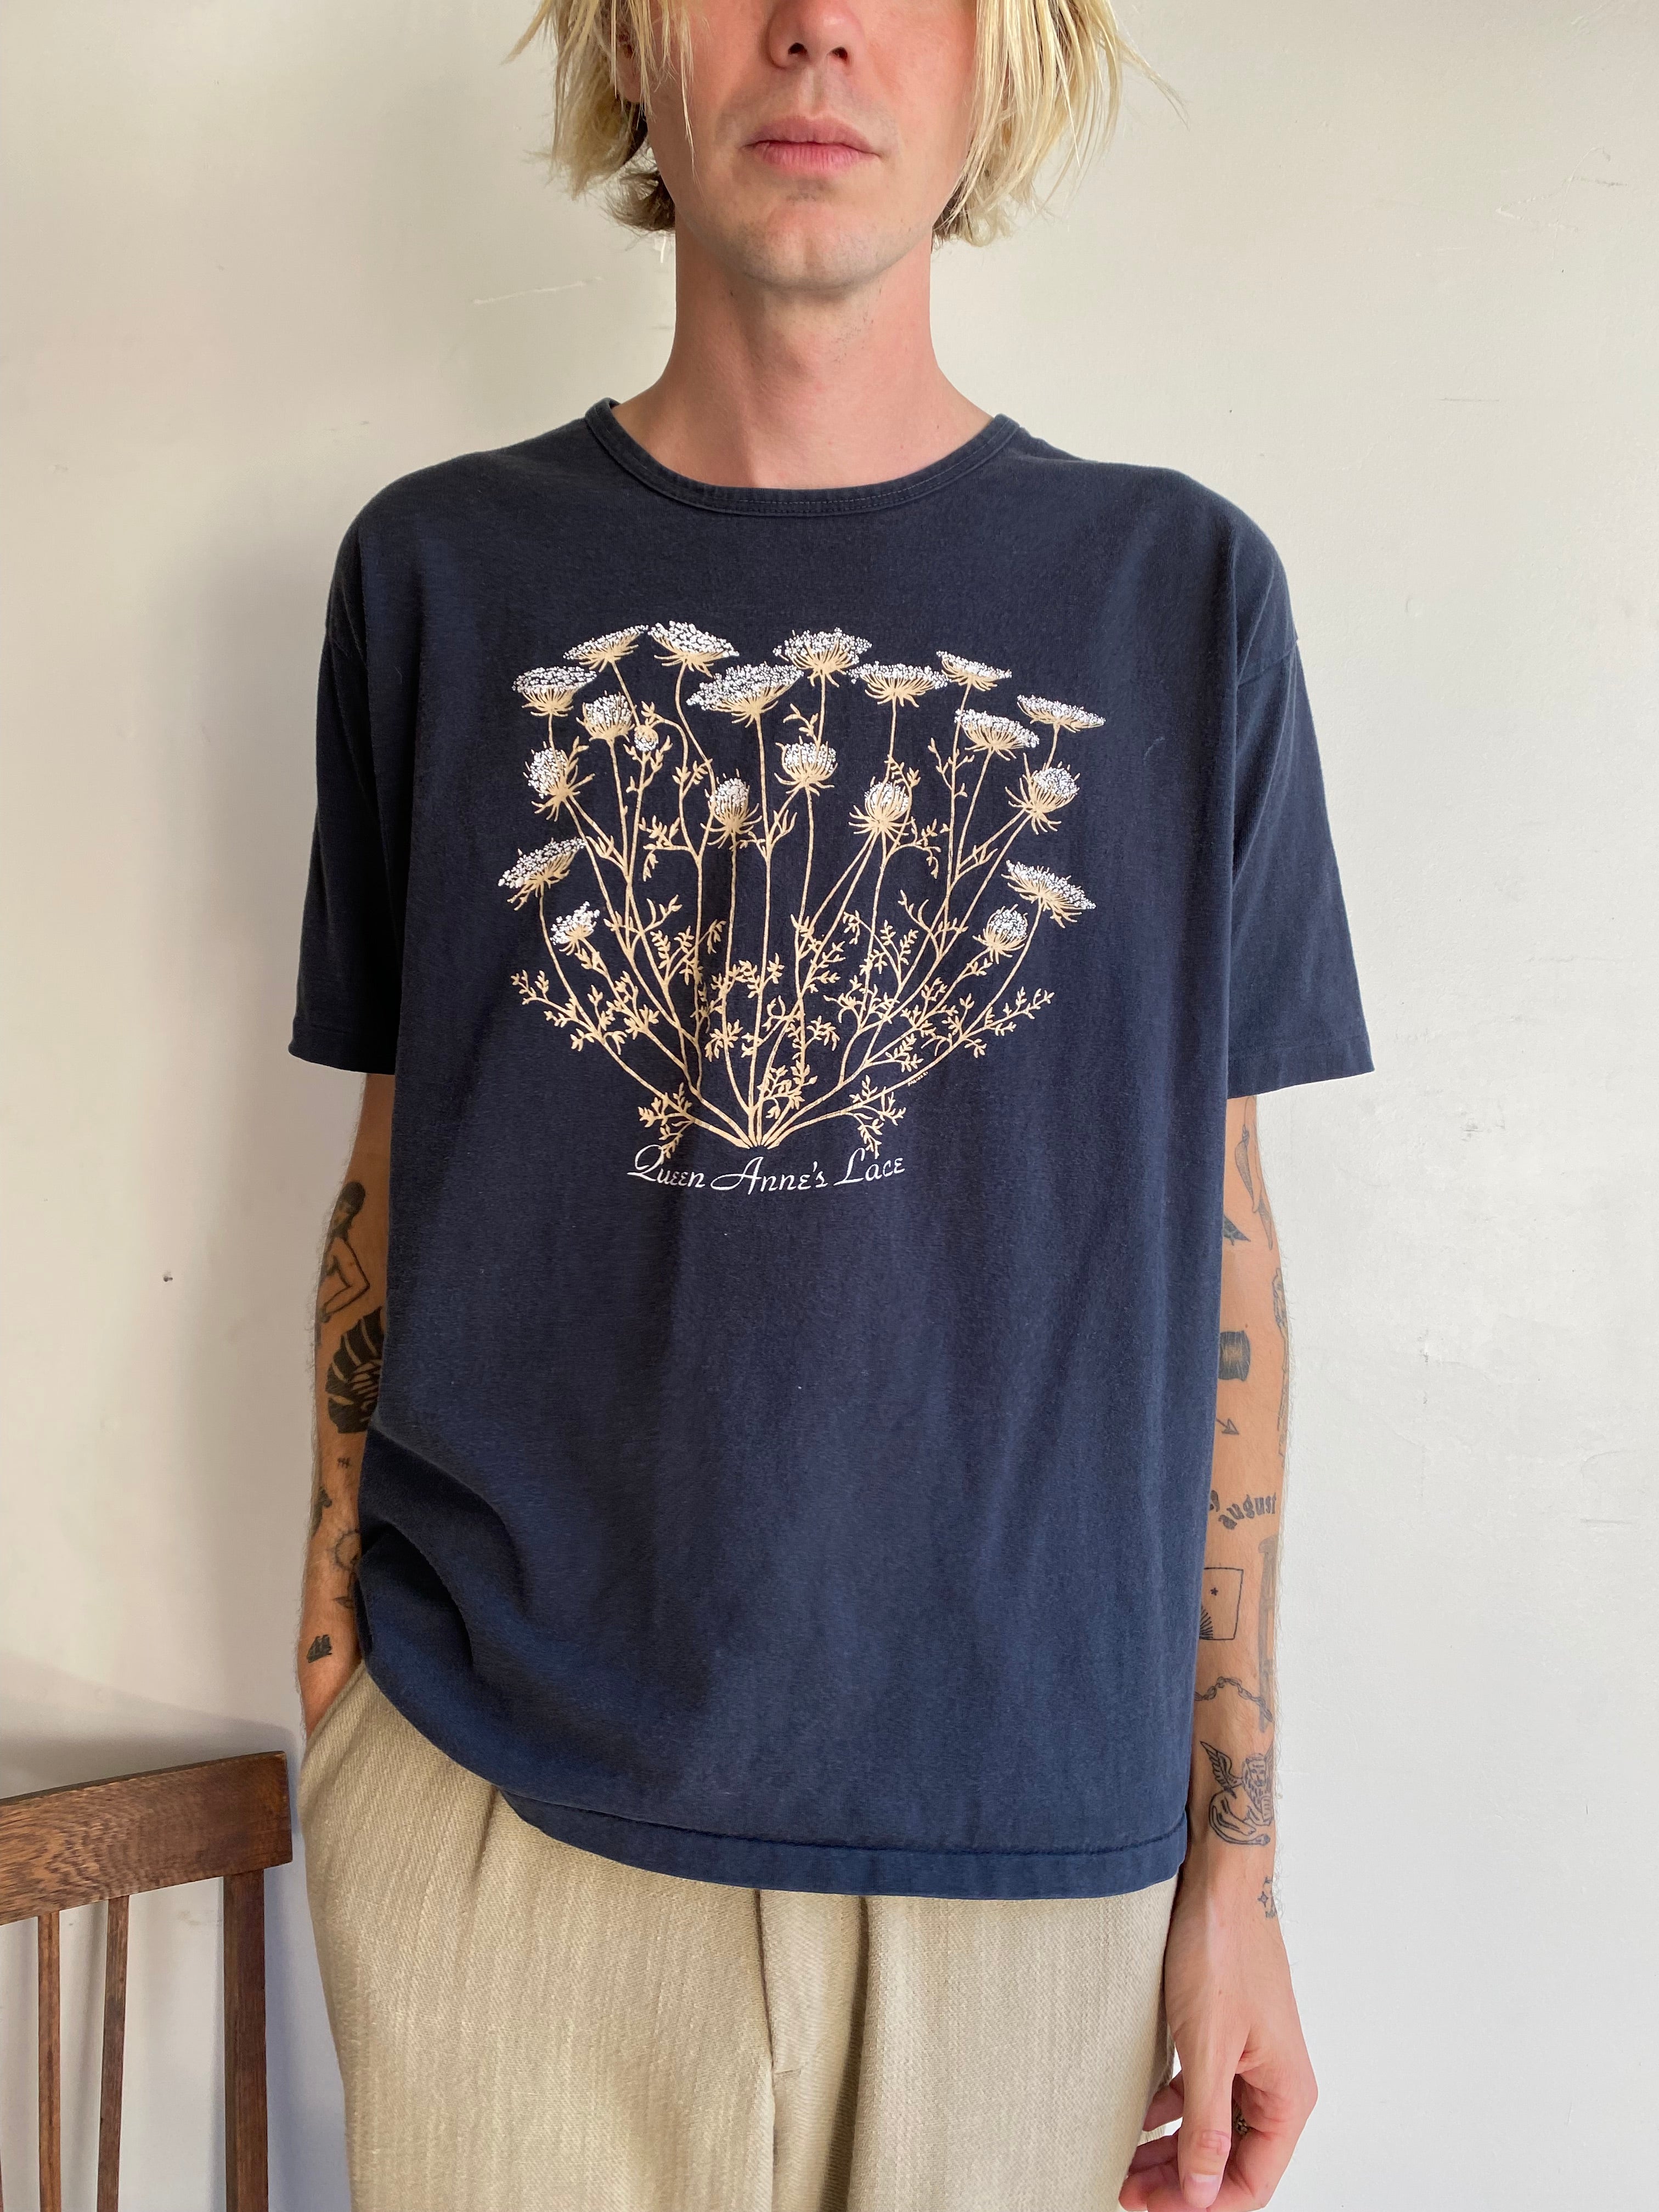 1990s Queen Anne's Lace T-Shirt (L)